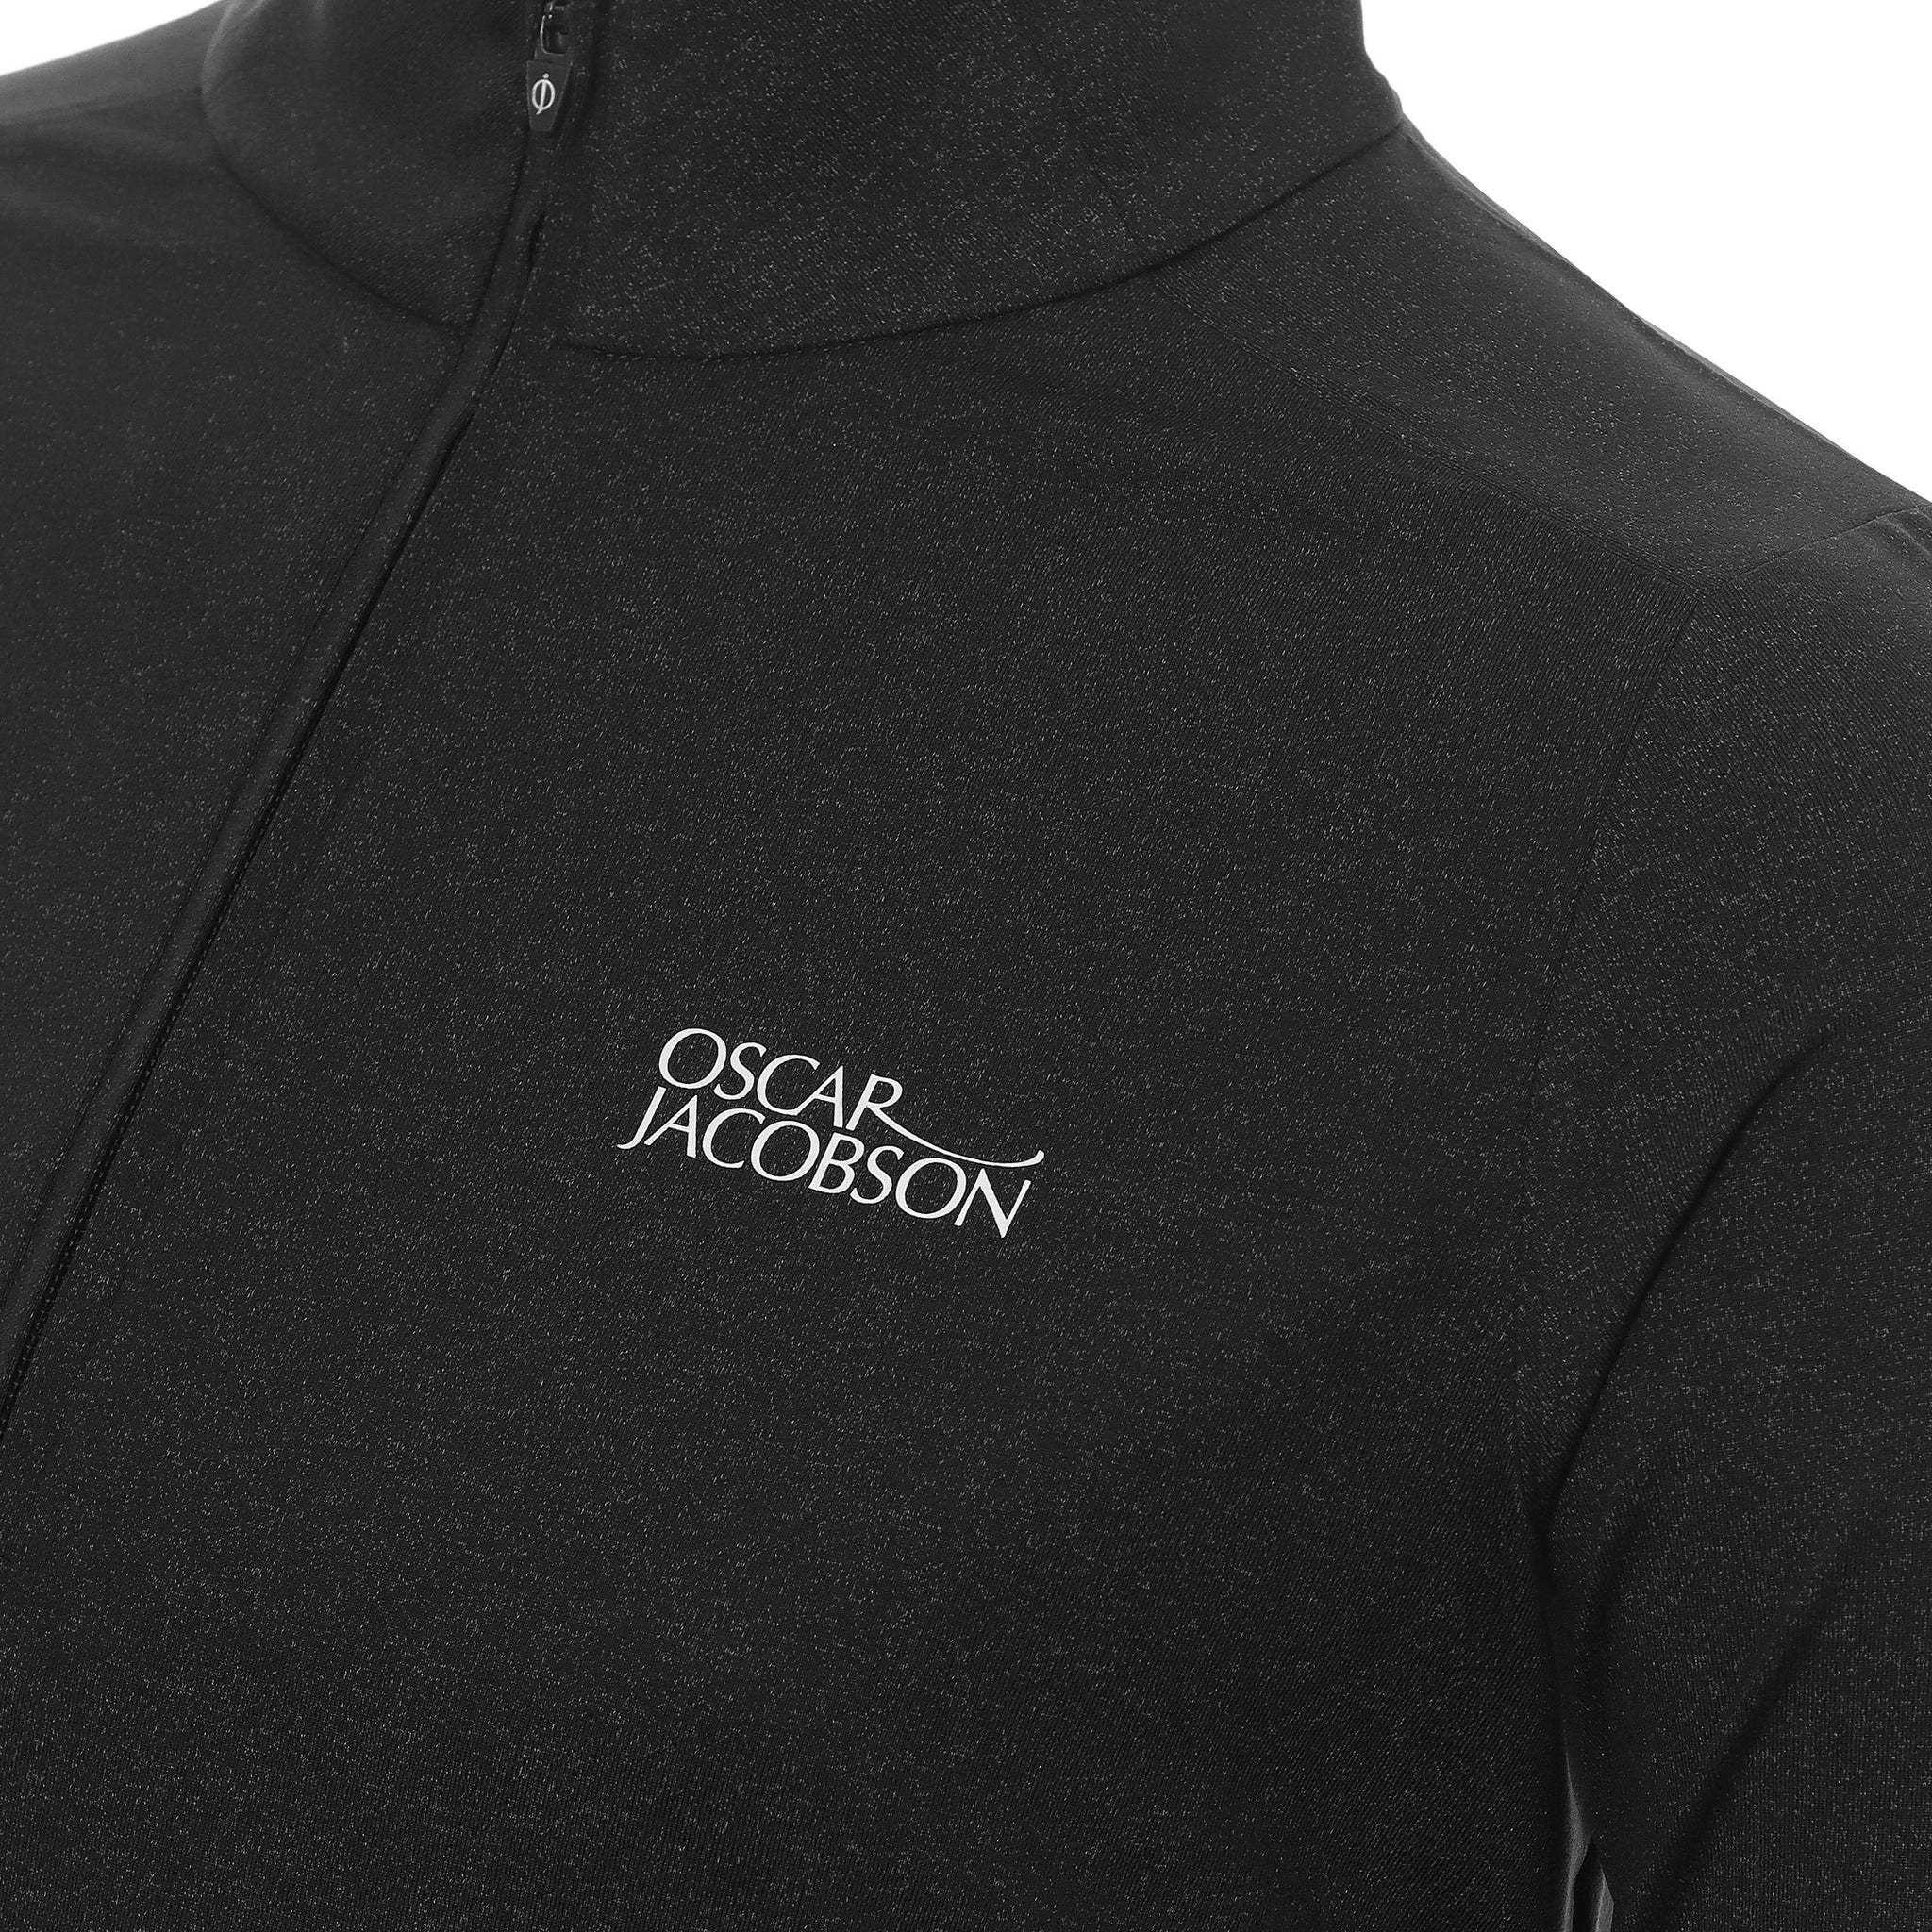 oscar-jacobson-lawton-tour-pullover-ojtop0102-black-marl